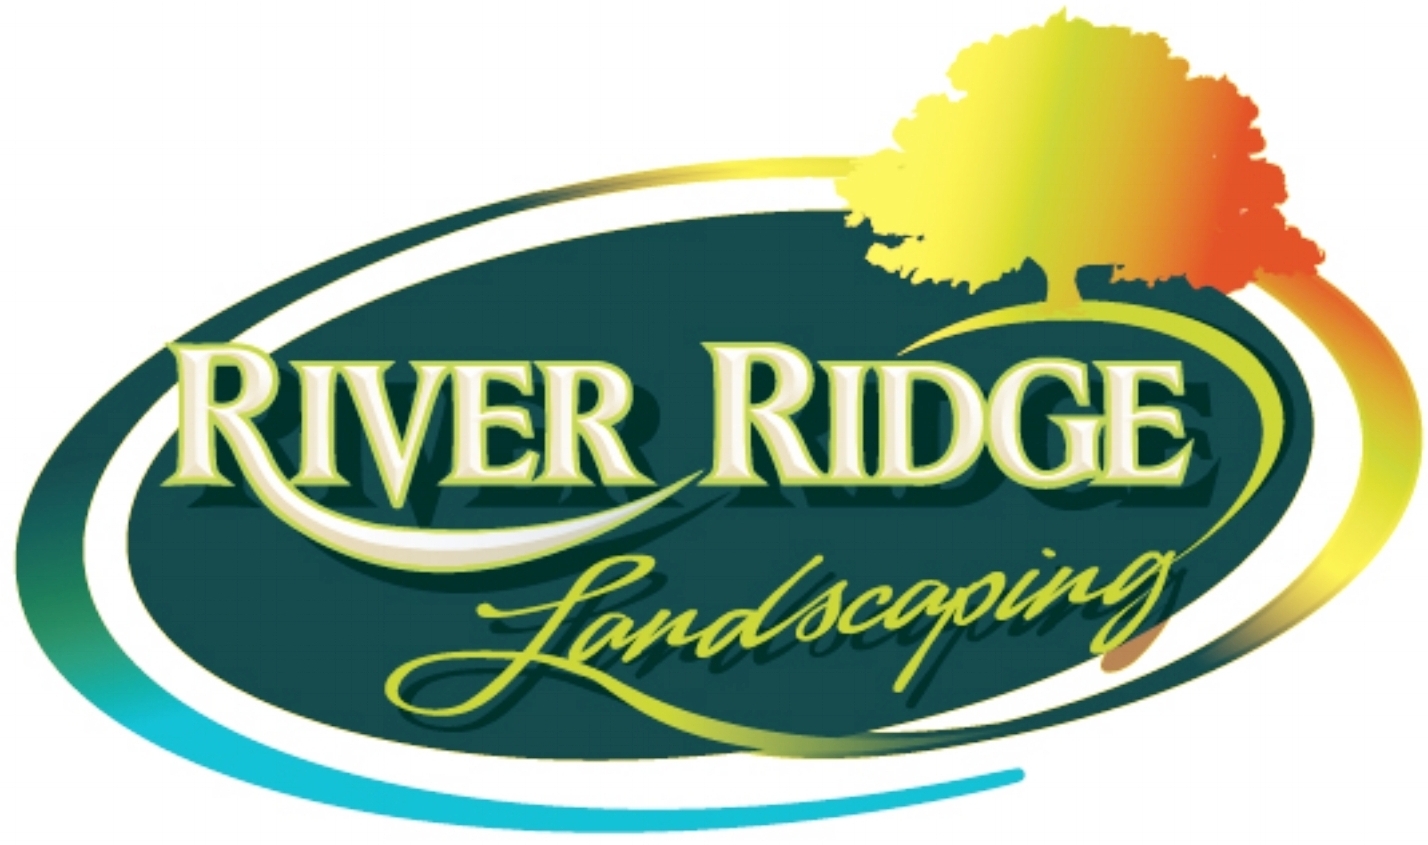 River Ridge Landscaping